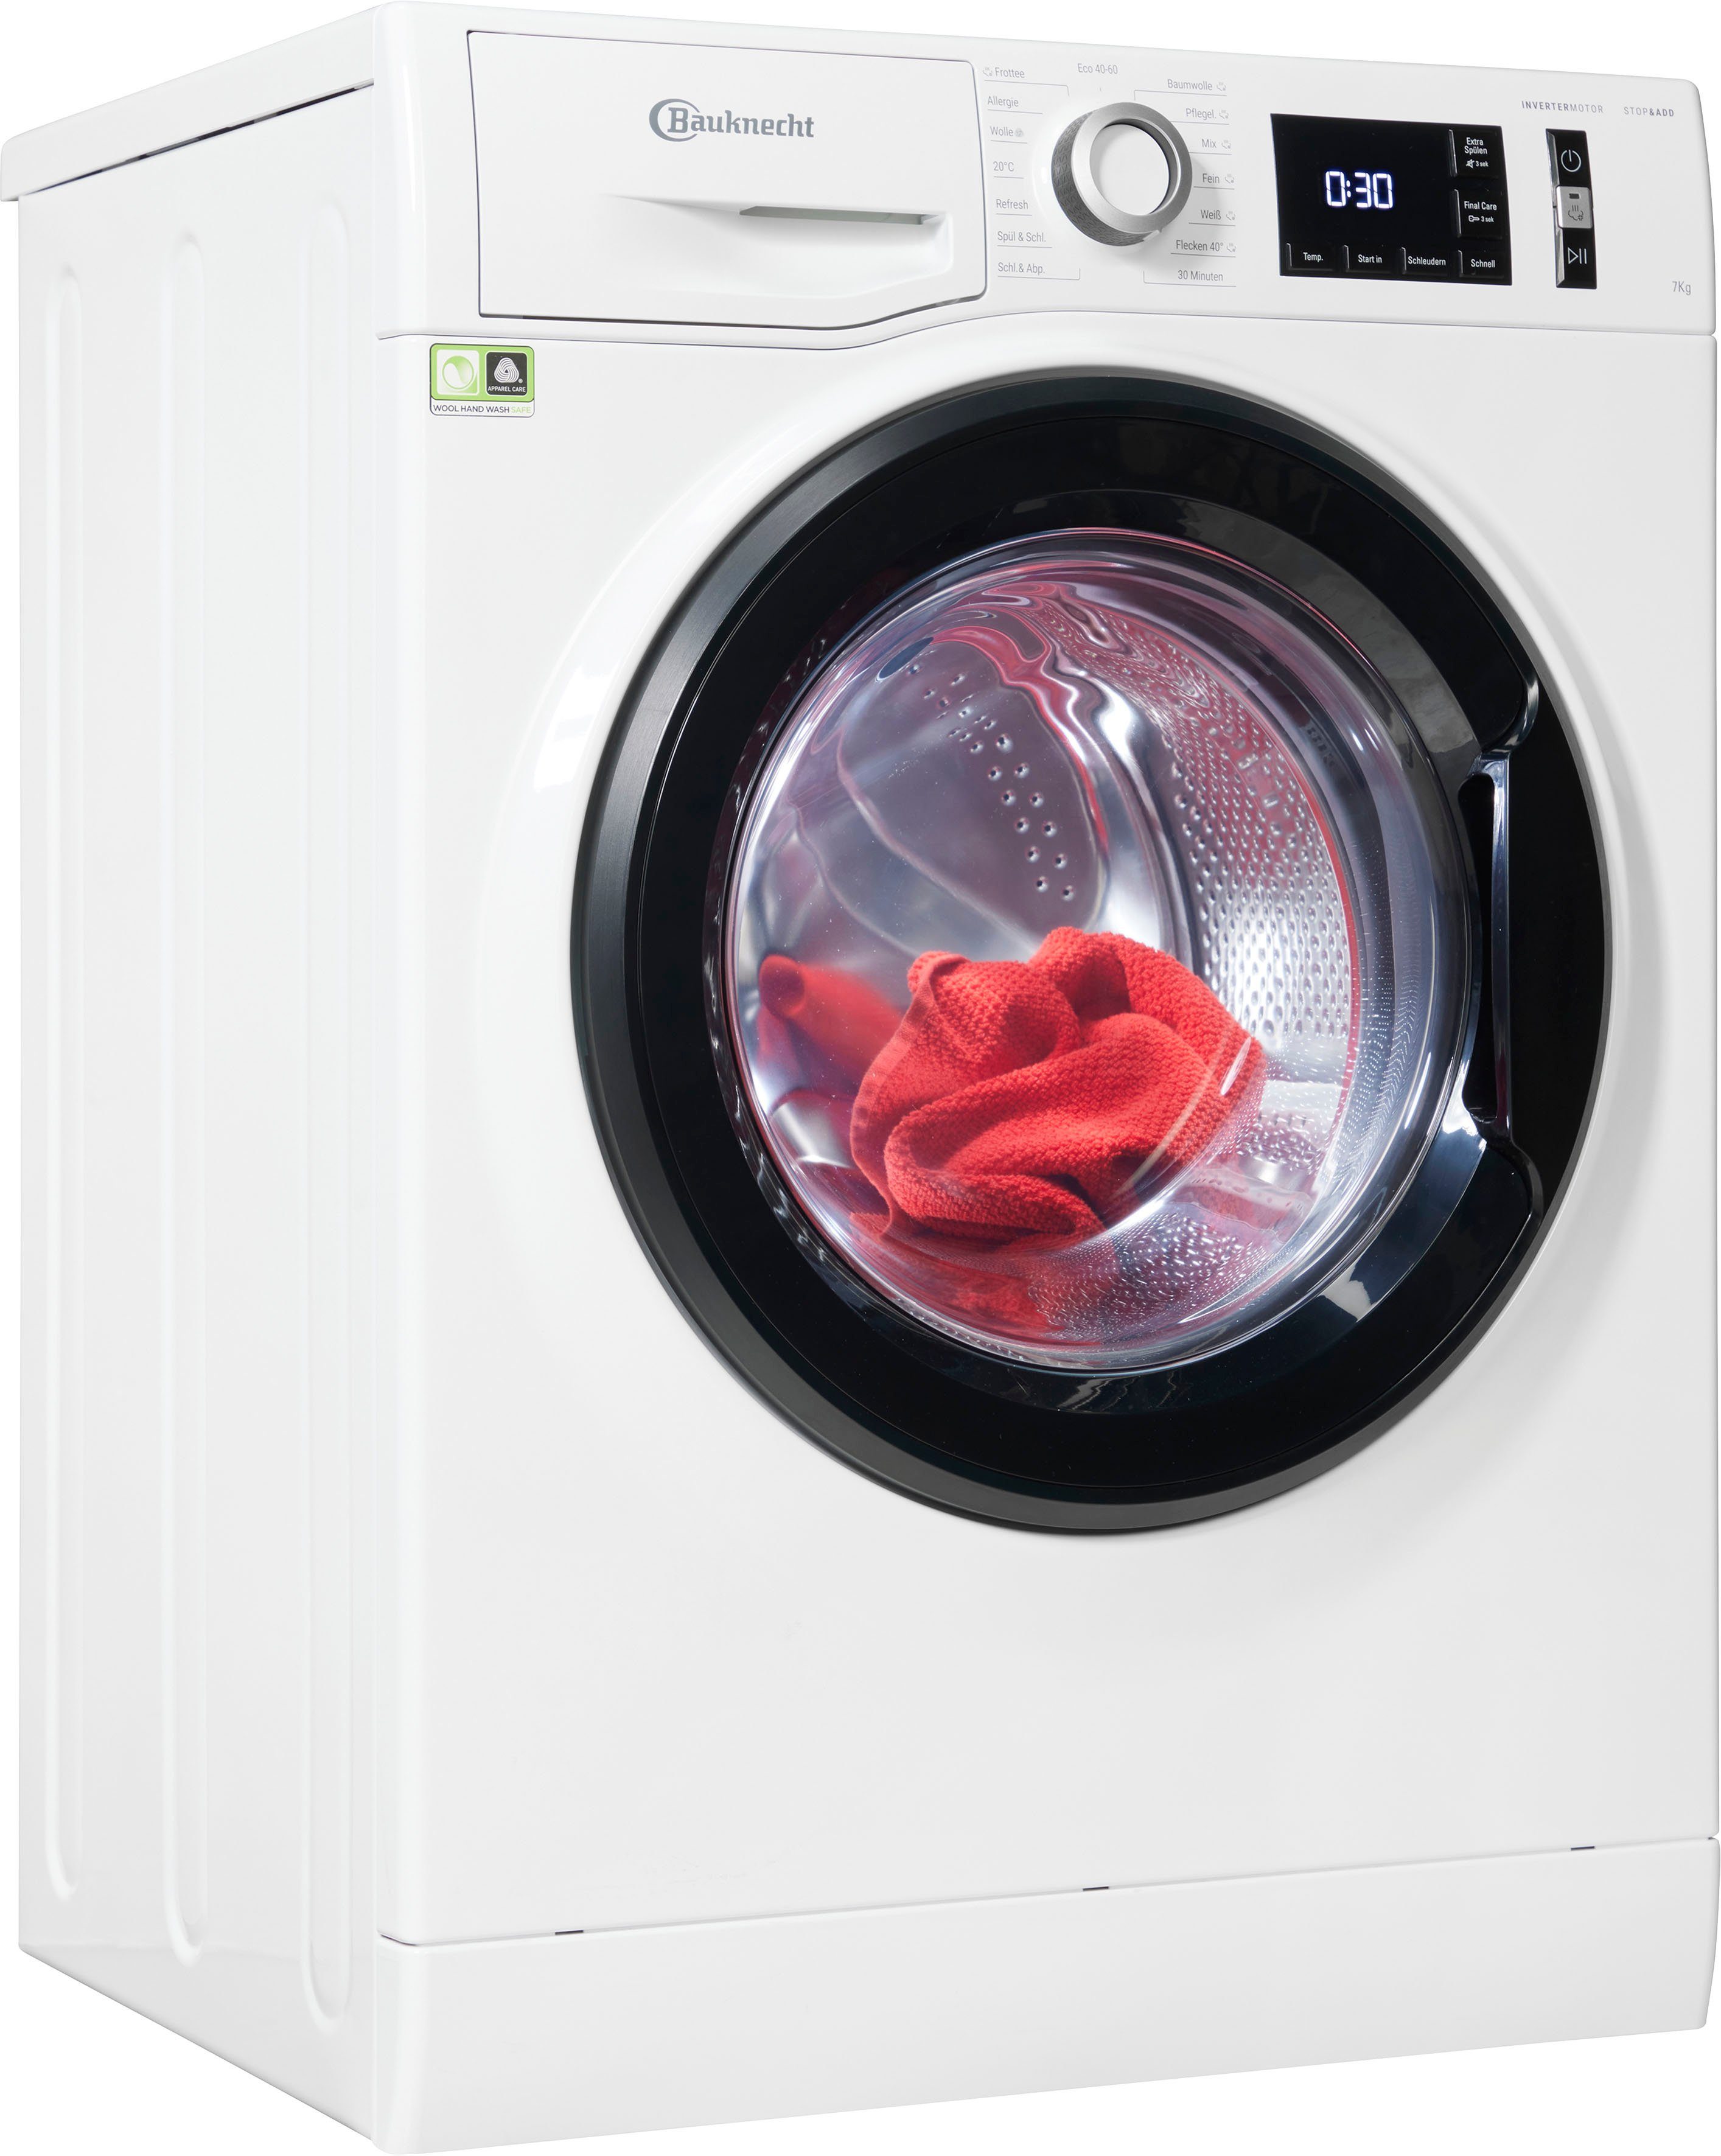 BAUKNECHT Waschmaschine W Active 712CC, 7 kg, 1300 U/min, 4 Jahre  Herstellergarantie online kaufen | OTTO